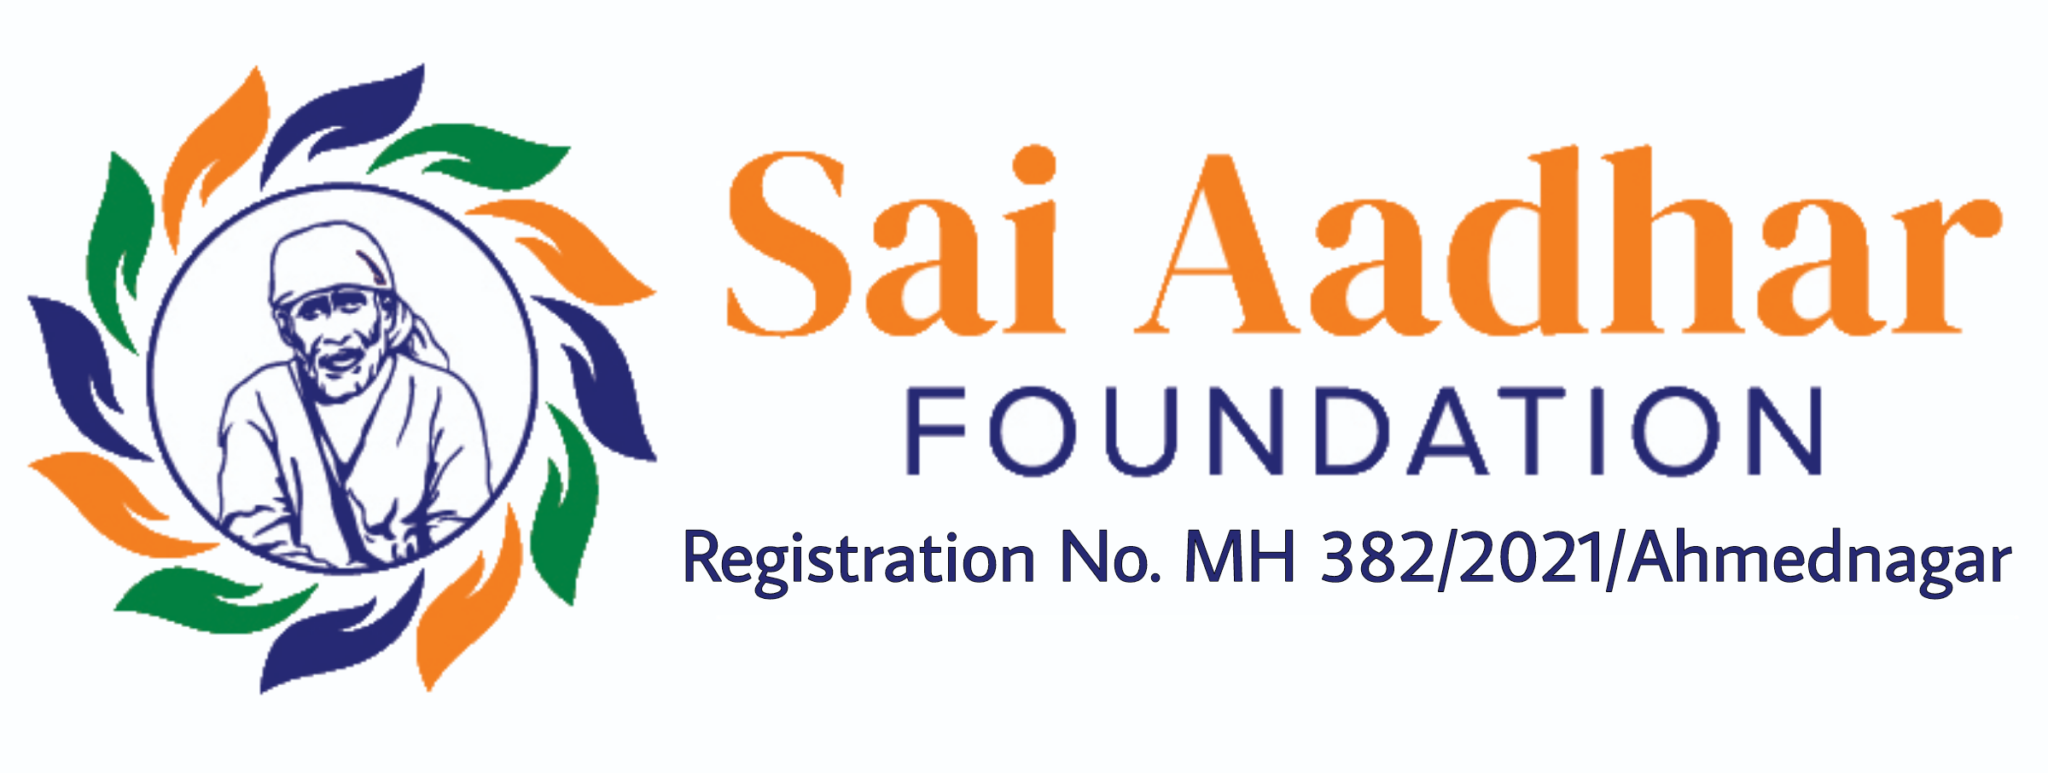 sai-baba-donation-in-shirdi-sai-aadhar-foundation